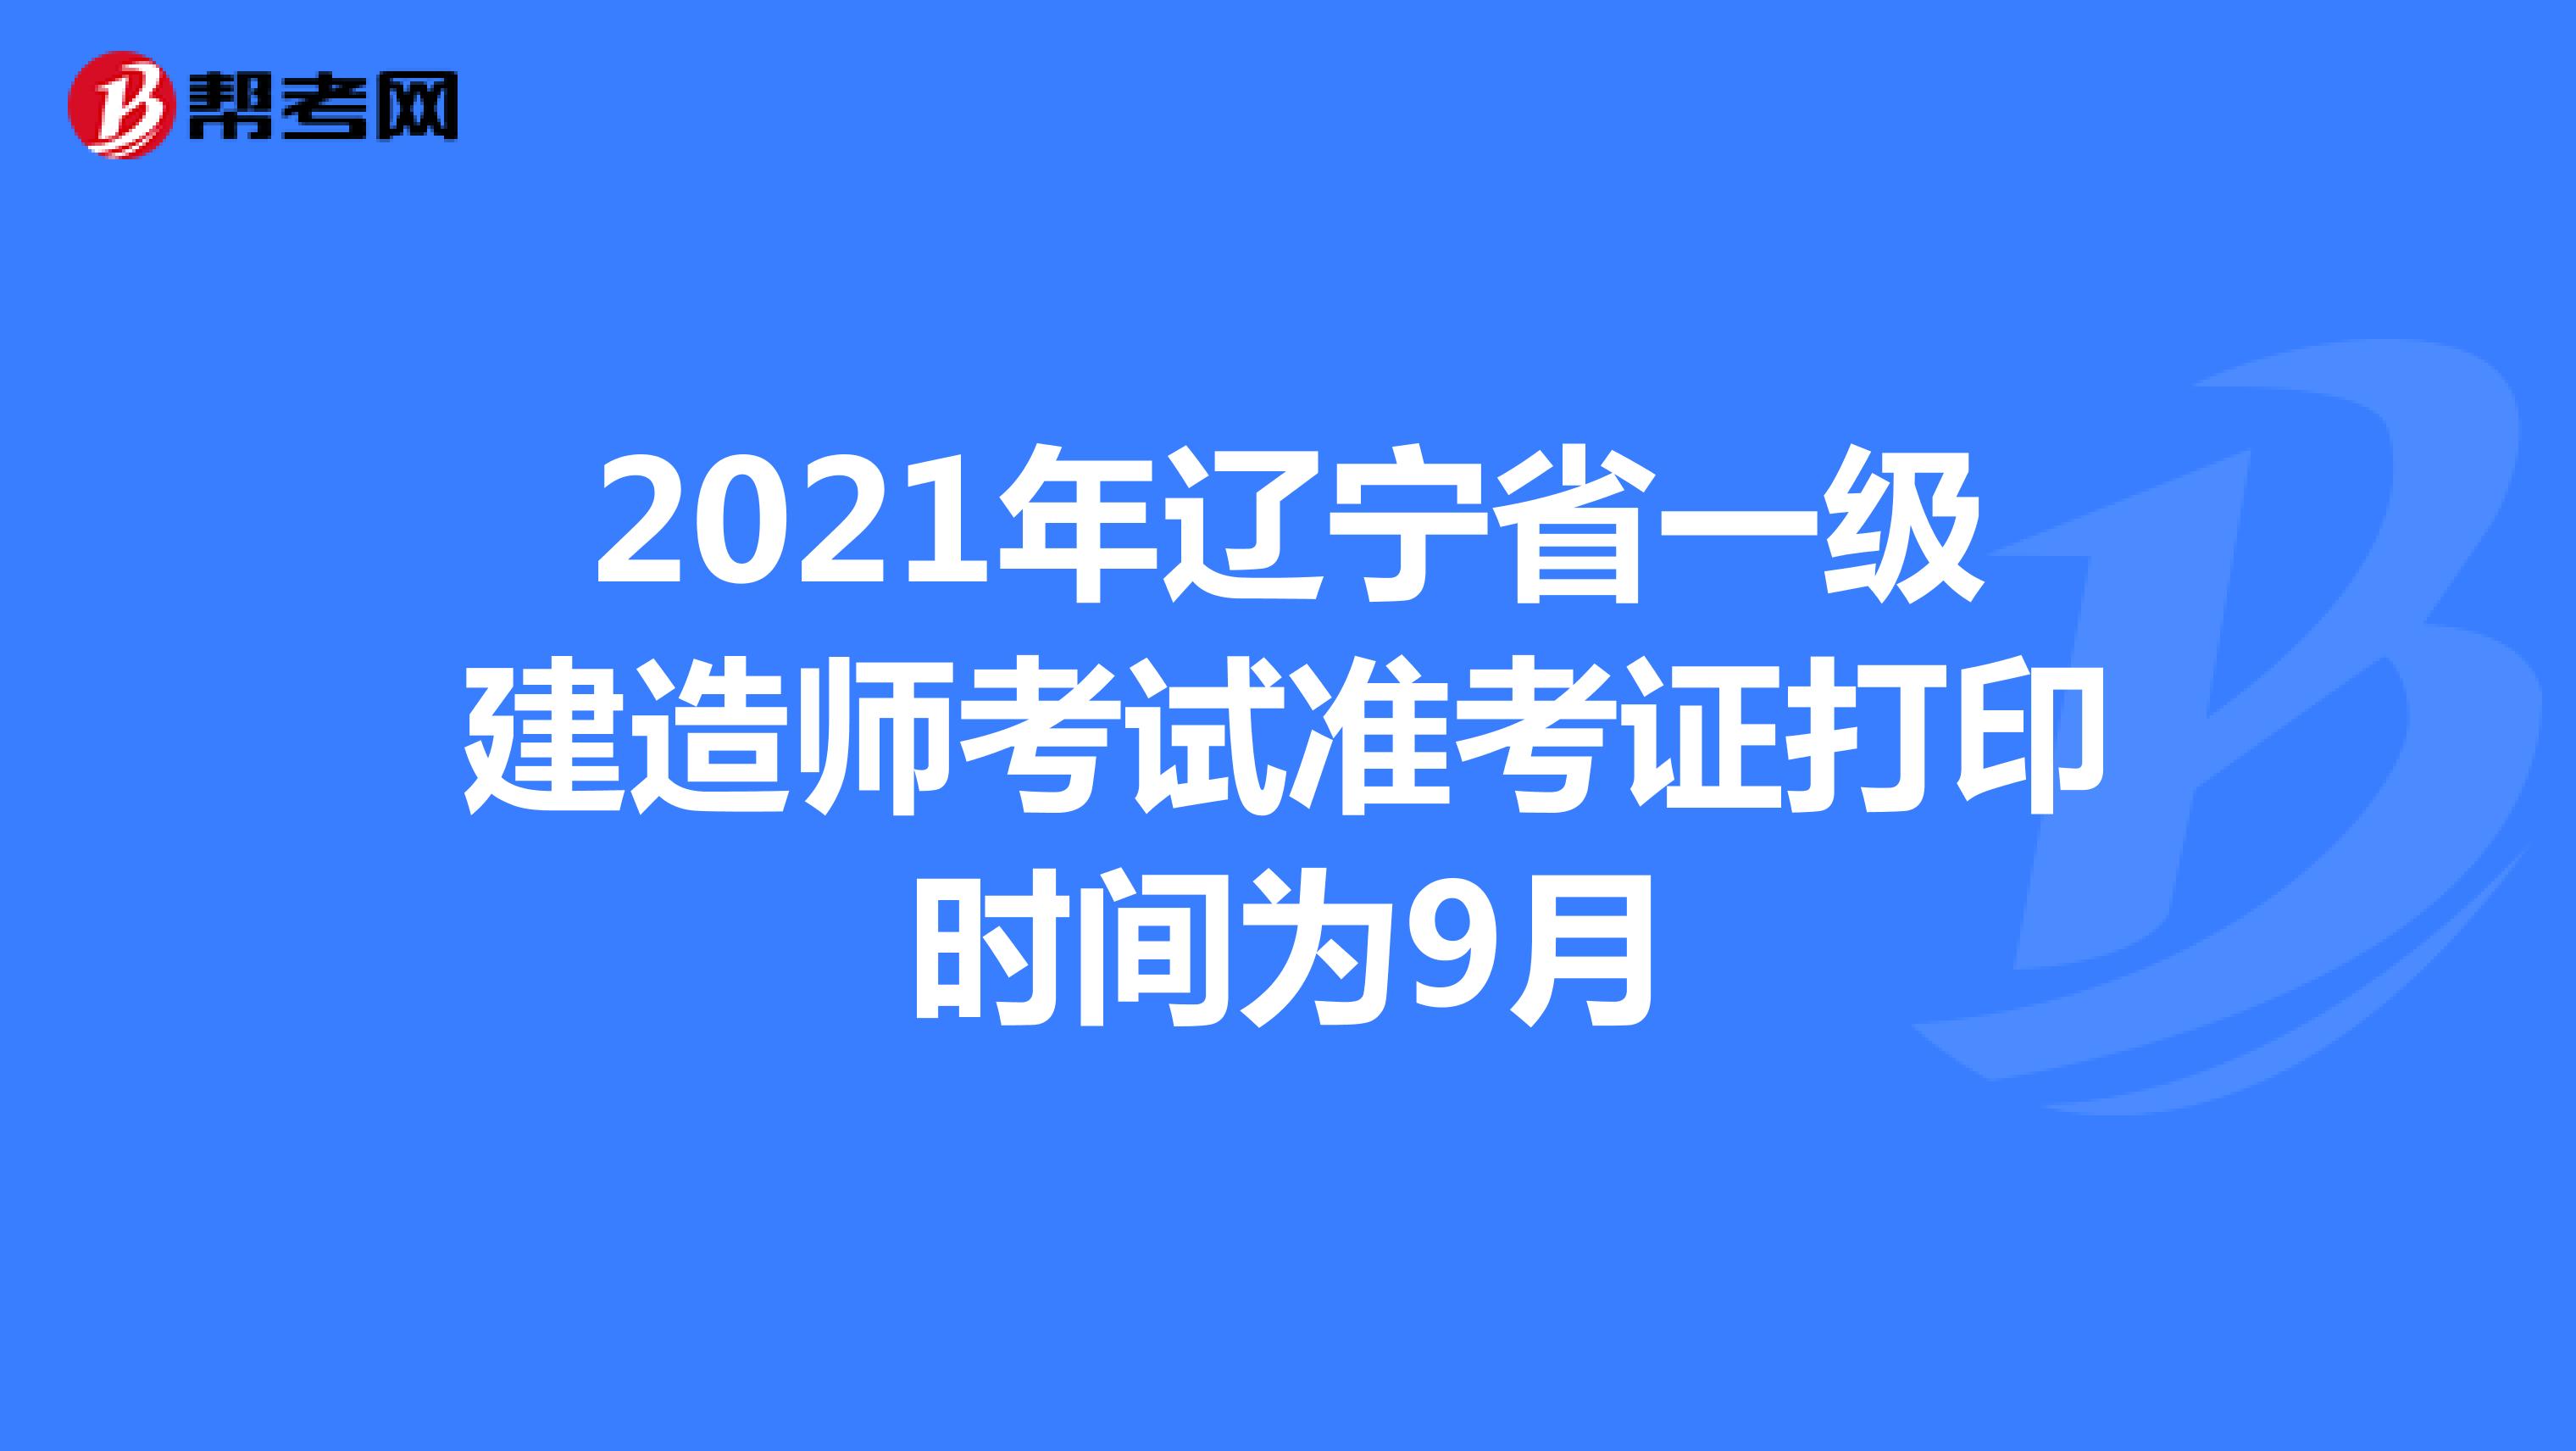 2021年辽宁省一级建造师考试准考证打印时间为9月